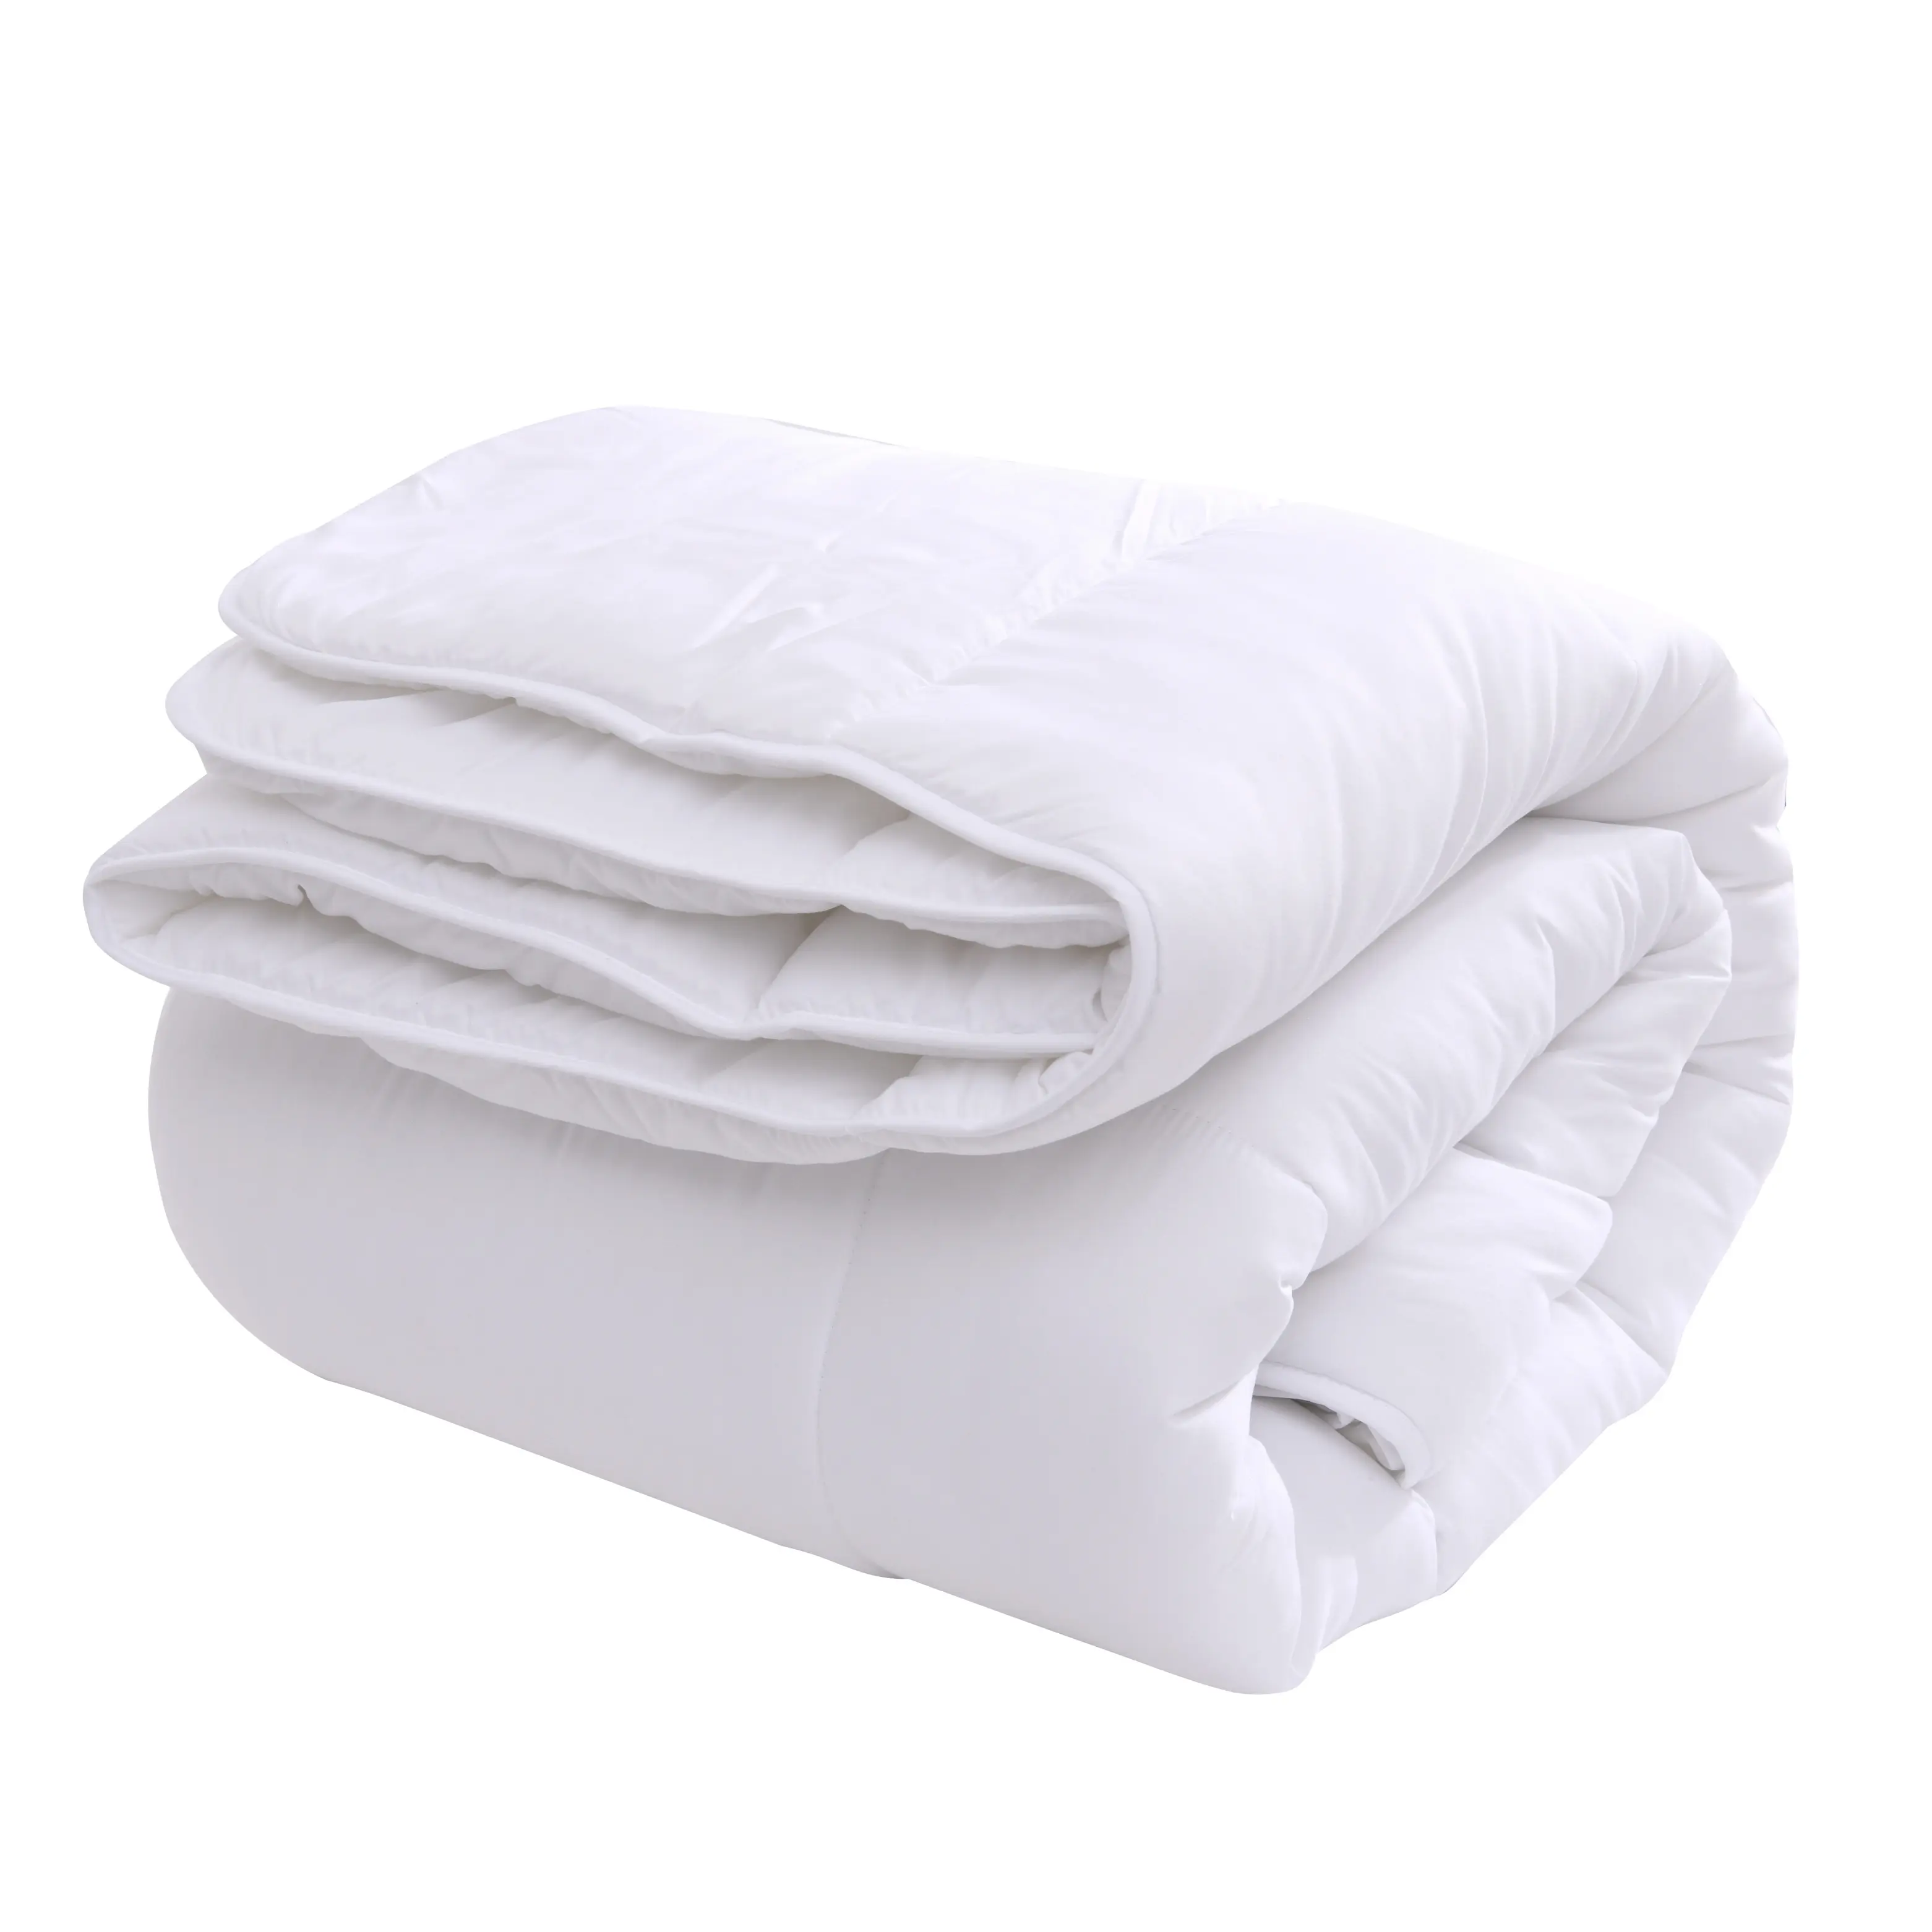 Высшее качество от поставщика, спальное постельное белье размера King Size, зимнее одеяло